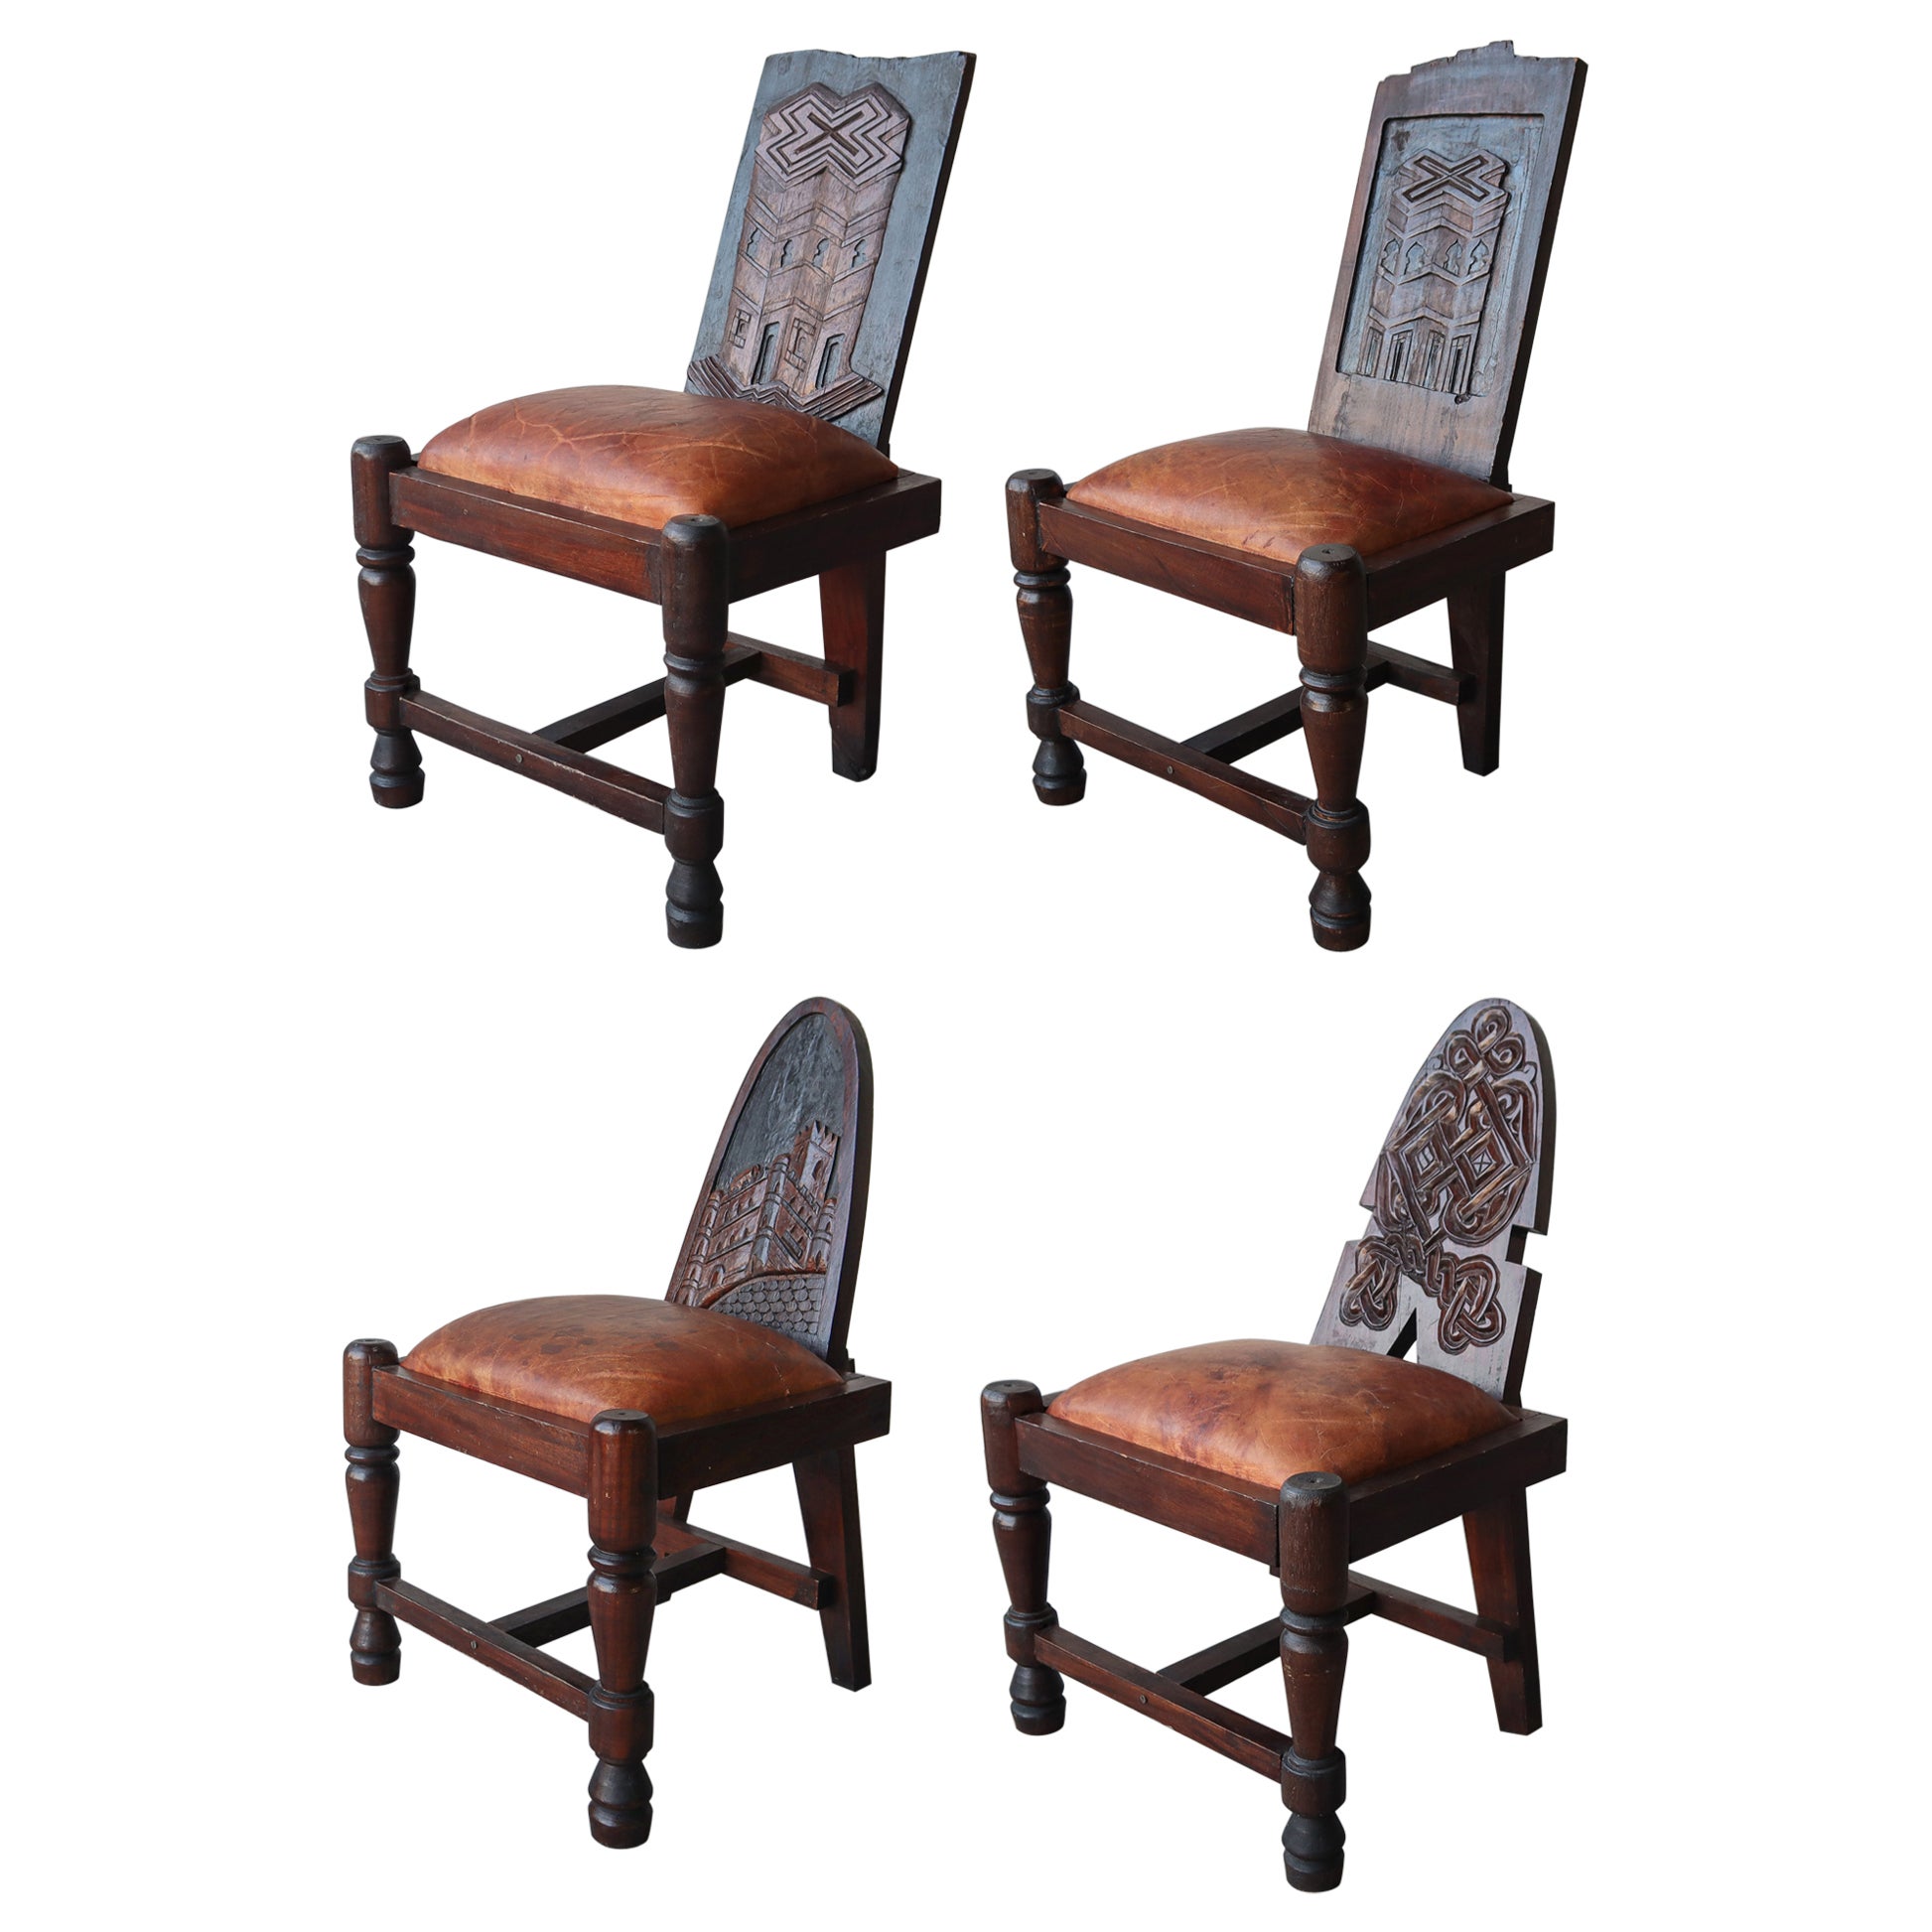 Handgeschnitzte Stühle aus Holz und Leder, Primitive Kunst